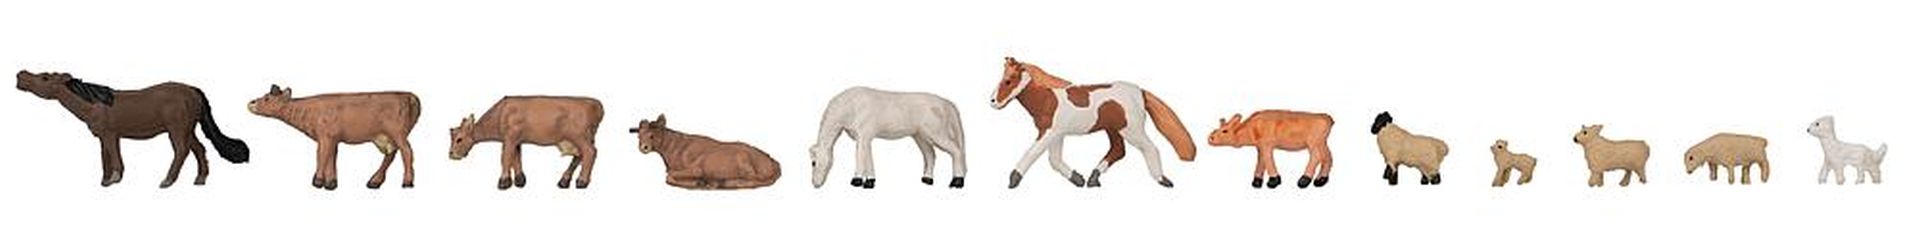 Faller 155911 - Tier-Set Kühe, Pferde, Schafe